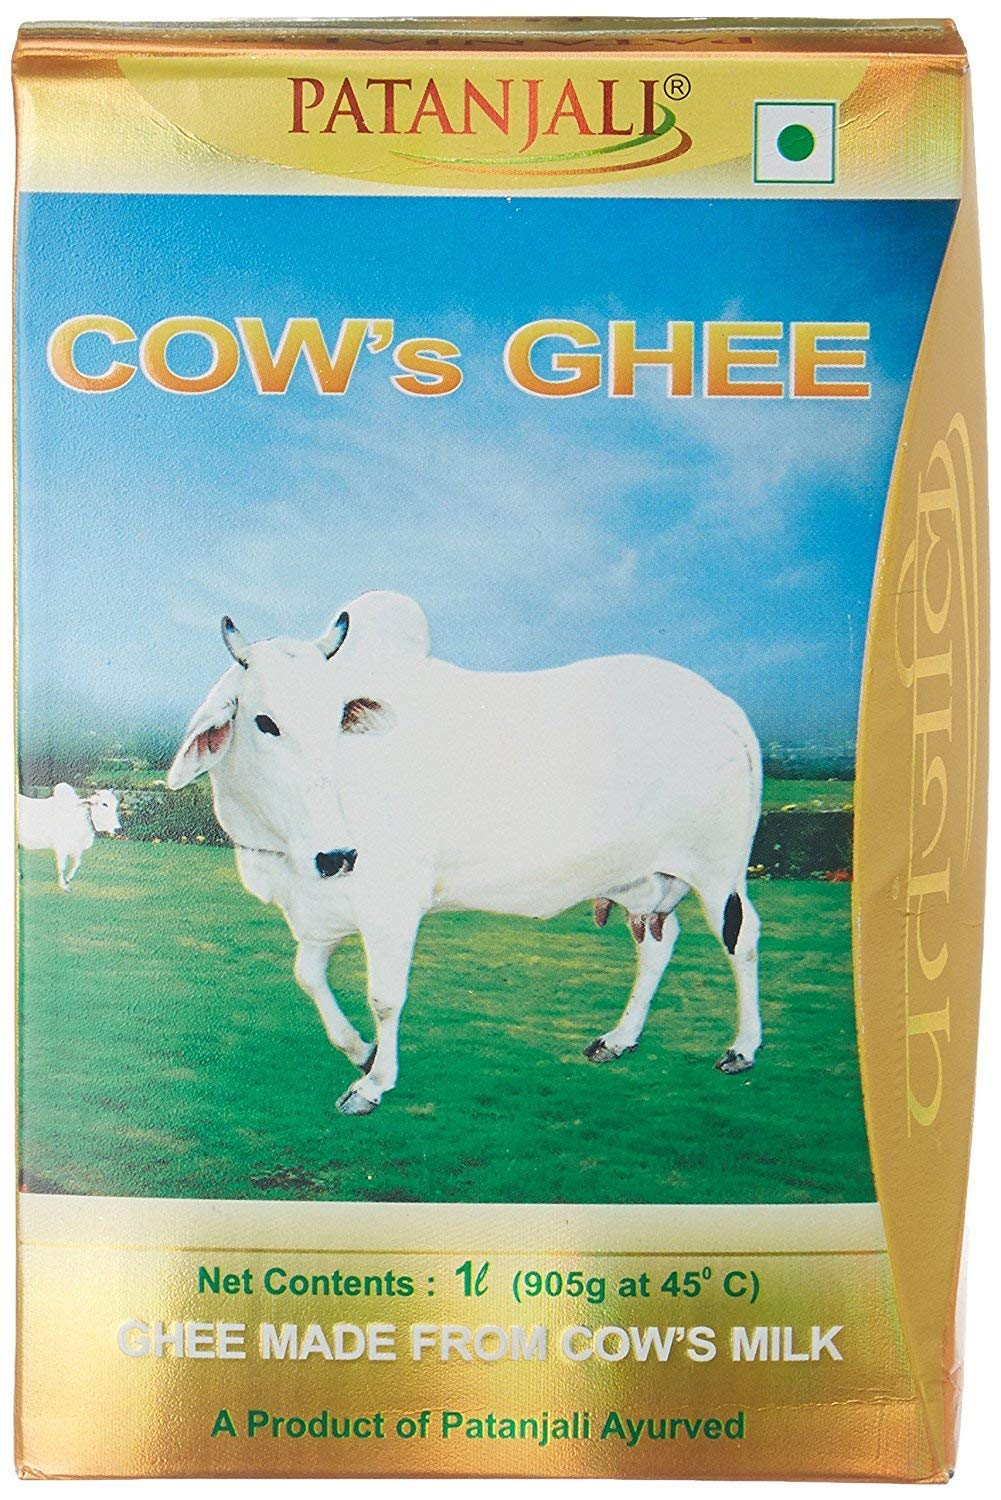 Cow's Ghee